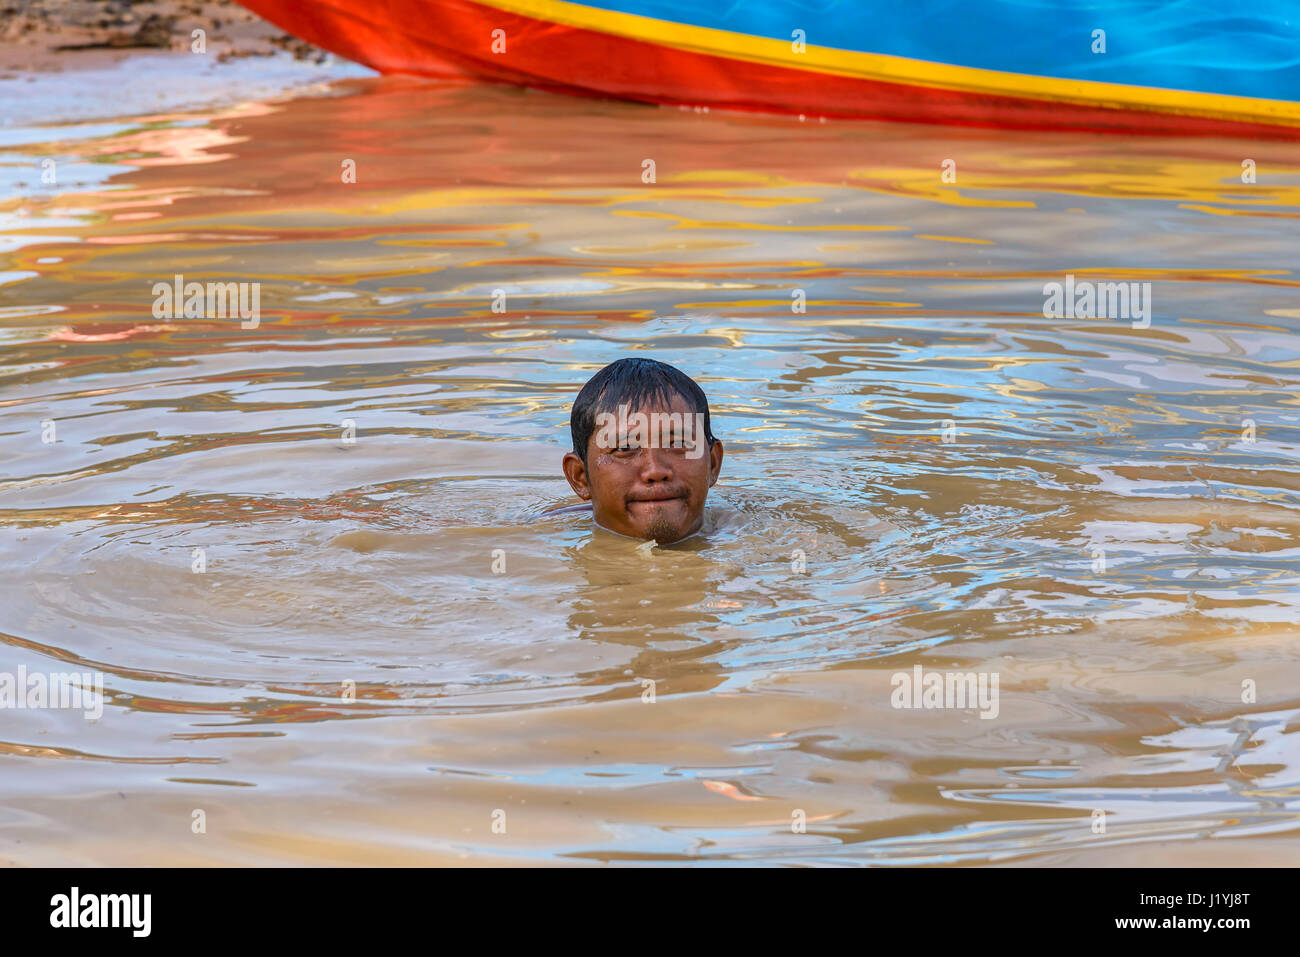 Lac Tonle Sap, Cambodge - janvier 04, 2017 : Avis d'un pêcheur est immergé dans l'eau. Environ 80 000 personnes vivent sur l'eau du lac de façon permanente, et les poissons Banque D'Images